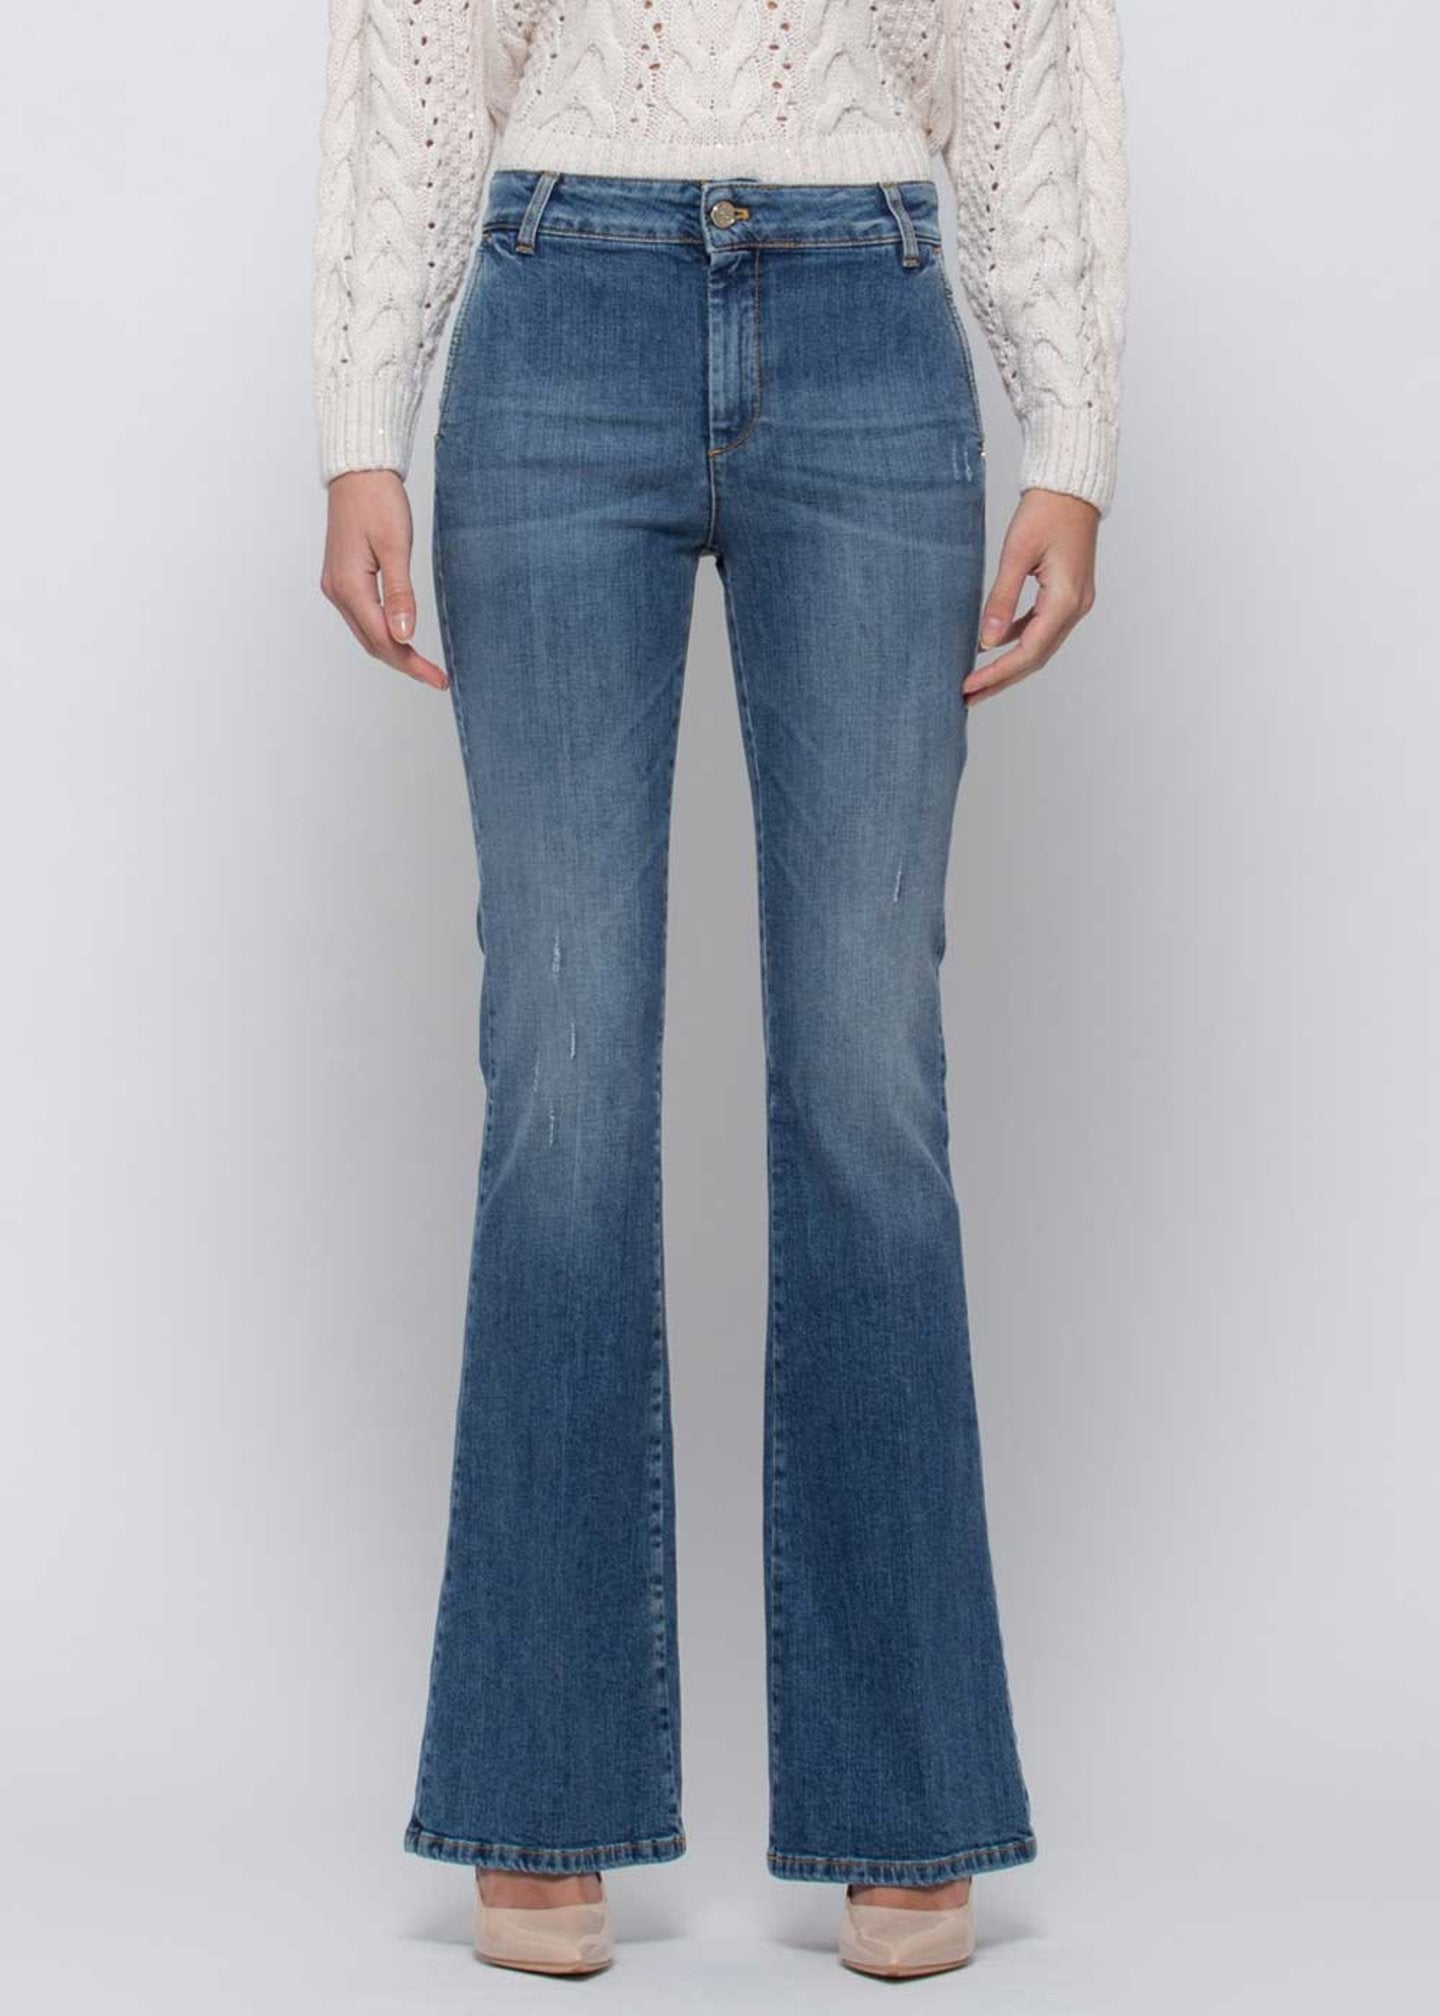 Jeans Kocca / Jeans - Ideal Moda